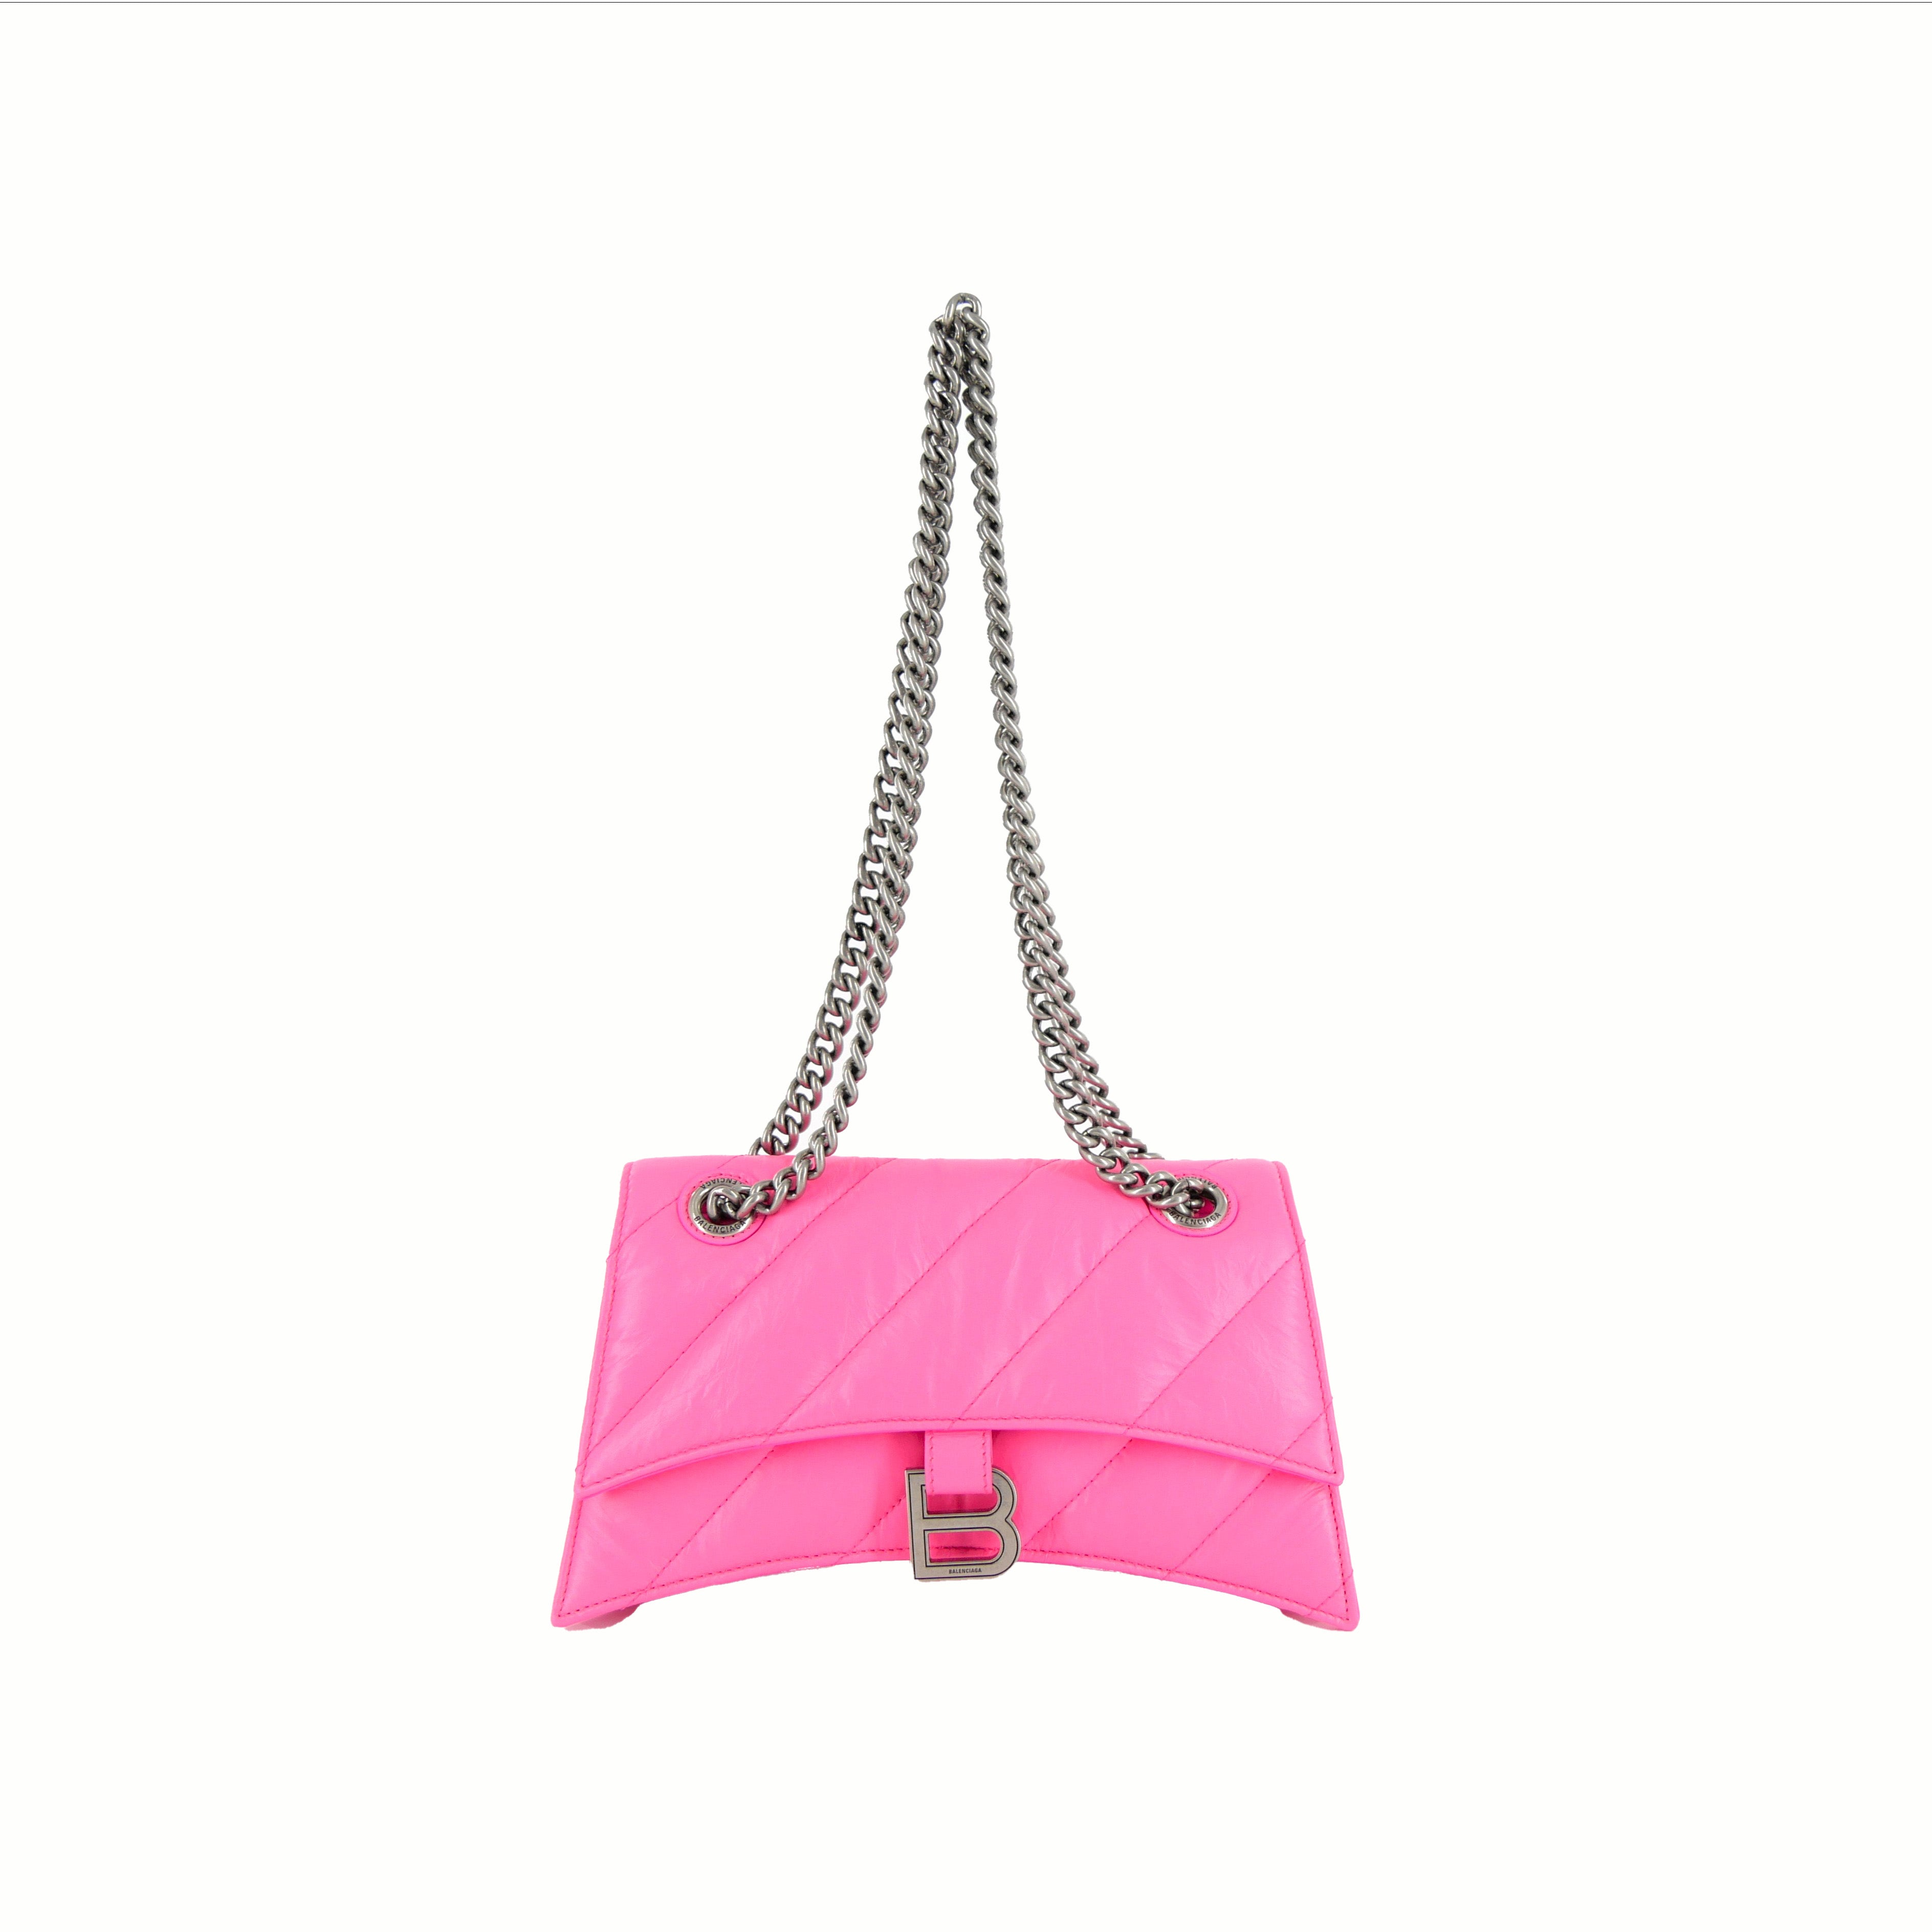 BALENCIAGA[バレンシアガ] / CRUSH Small Chain Bag Pink [クラッシュ スモール チェーン バッグ]